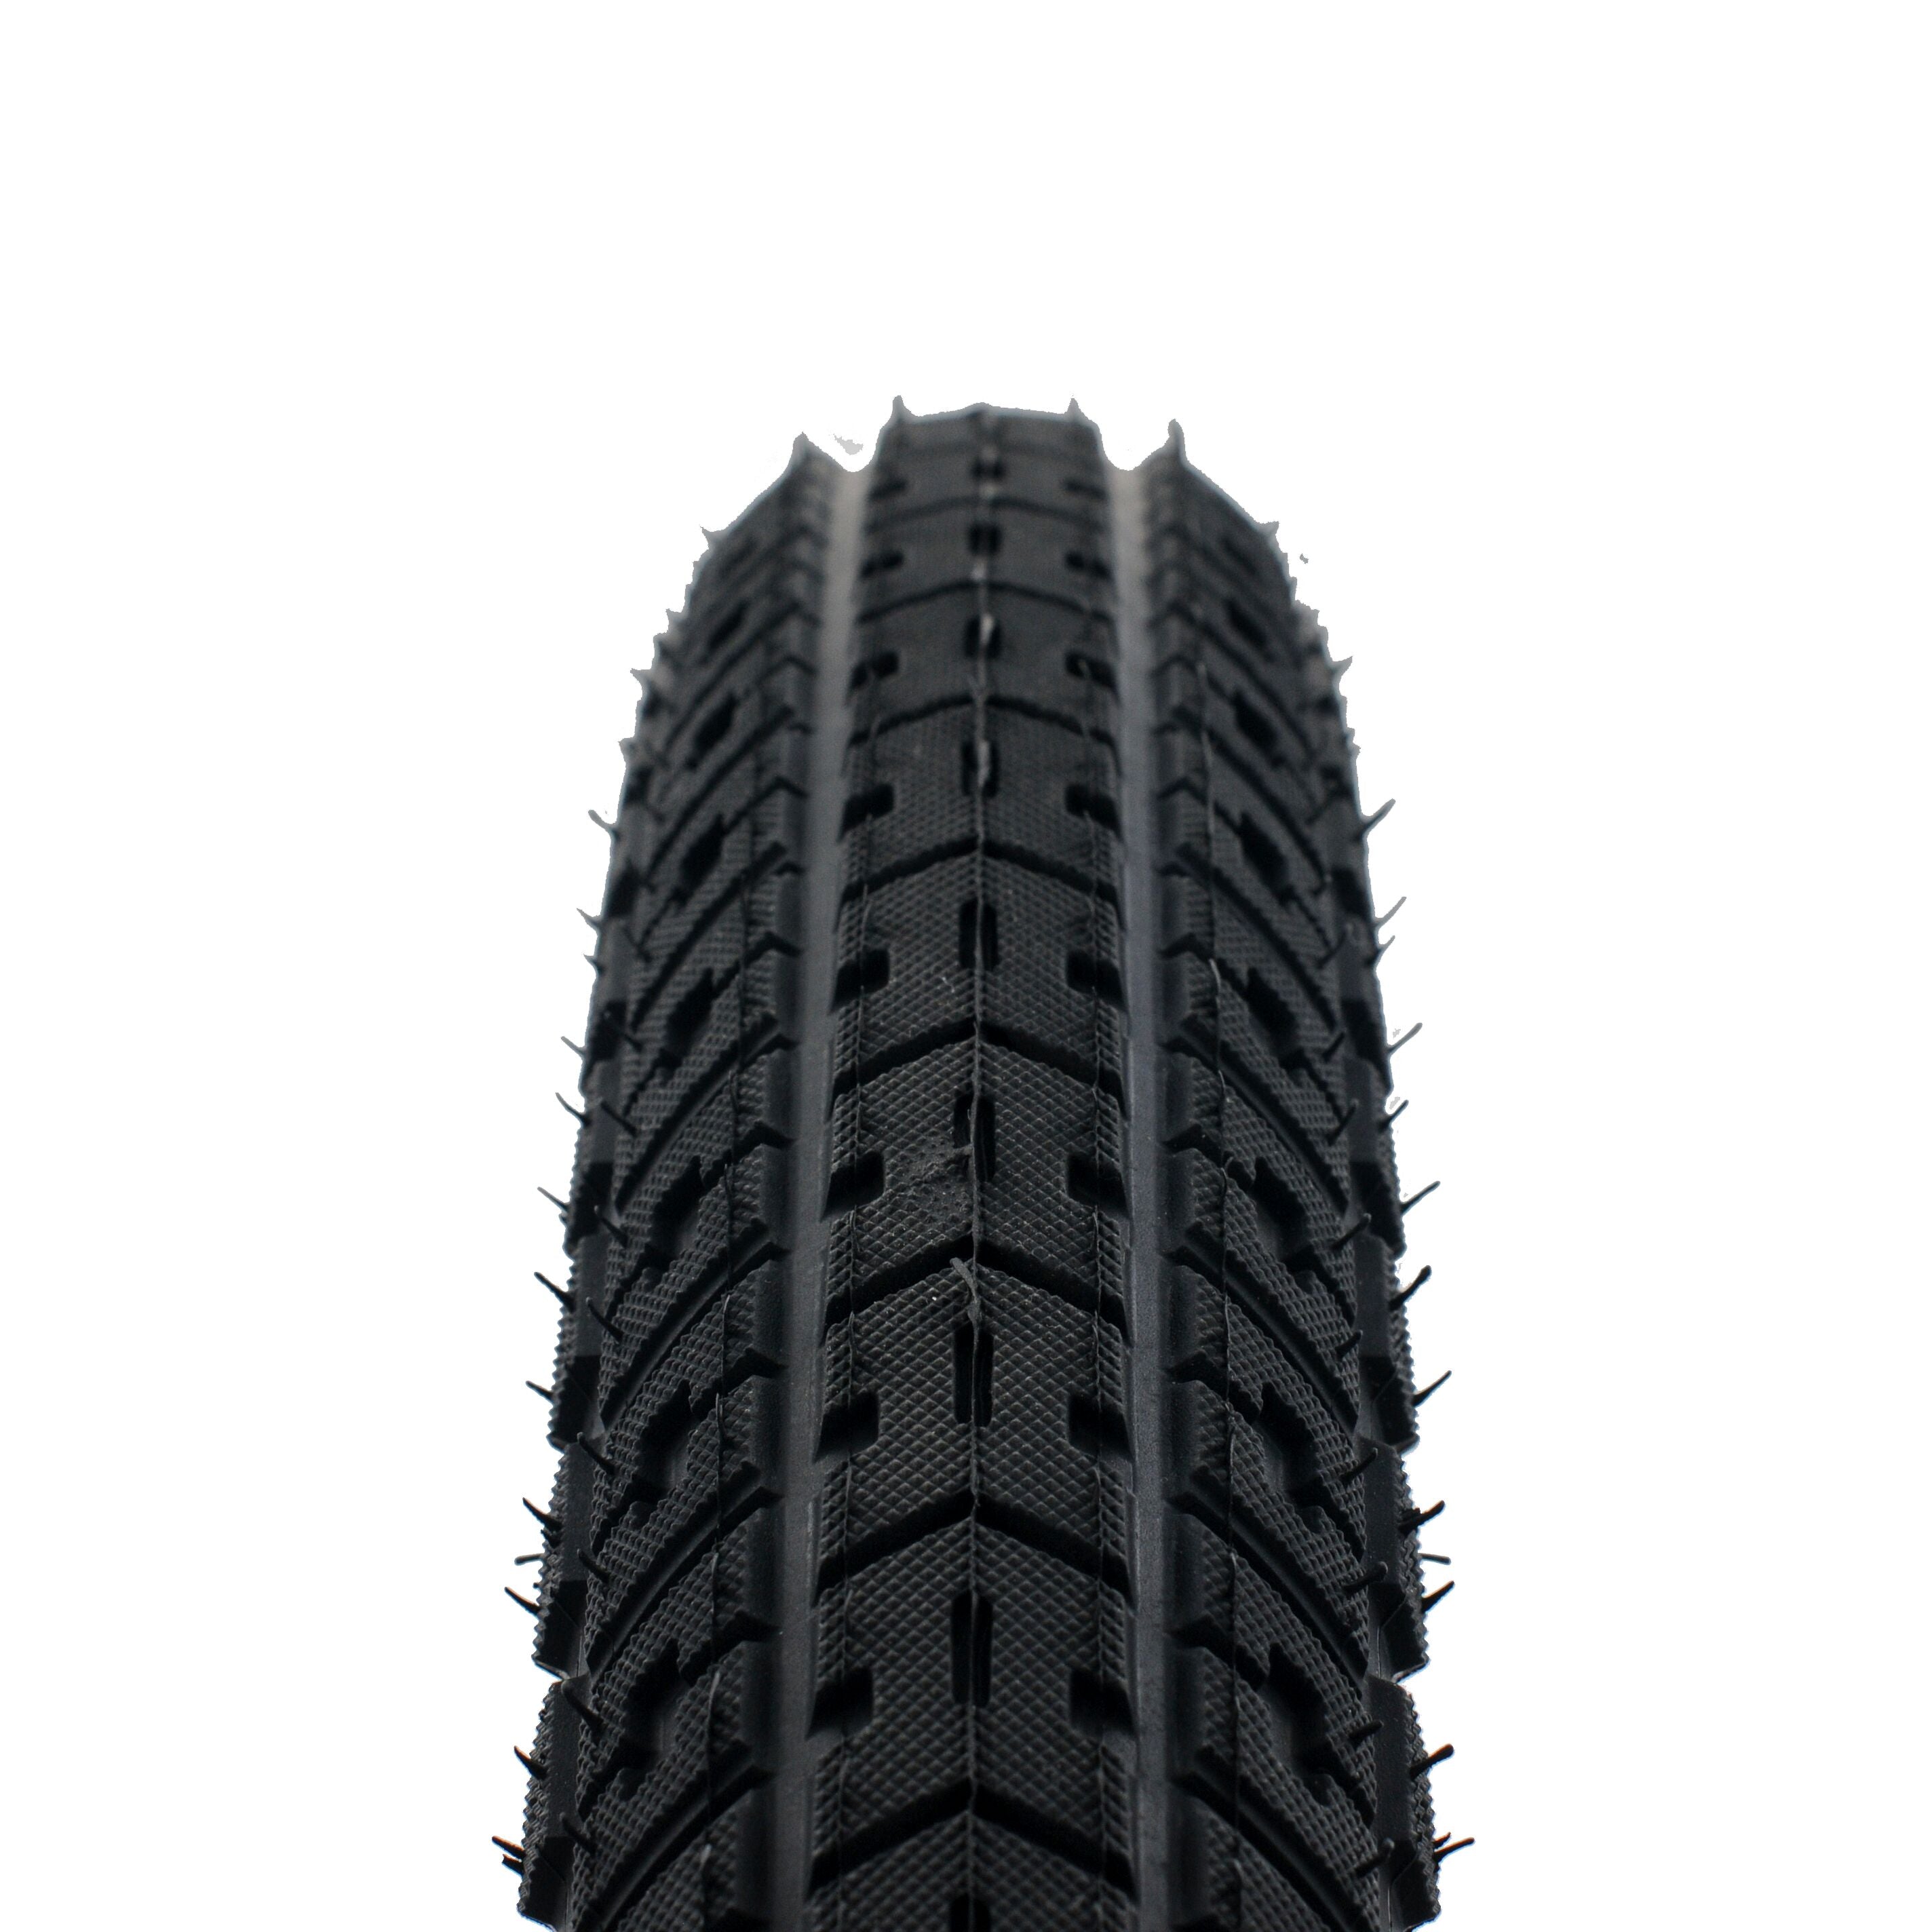 2.35 bmx tires